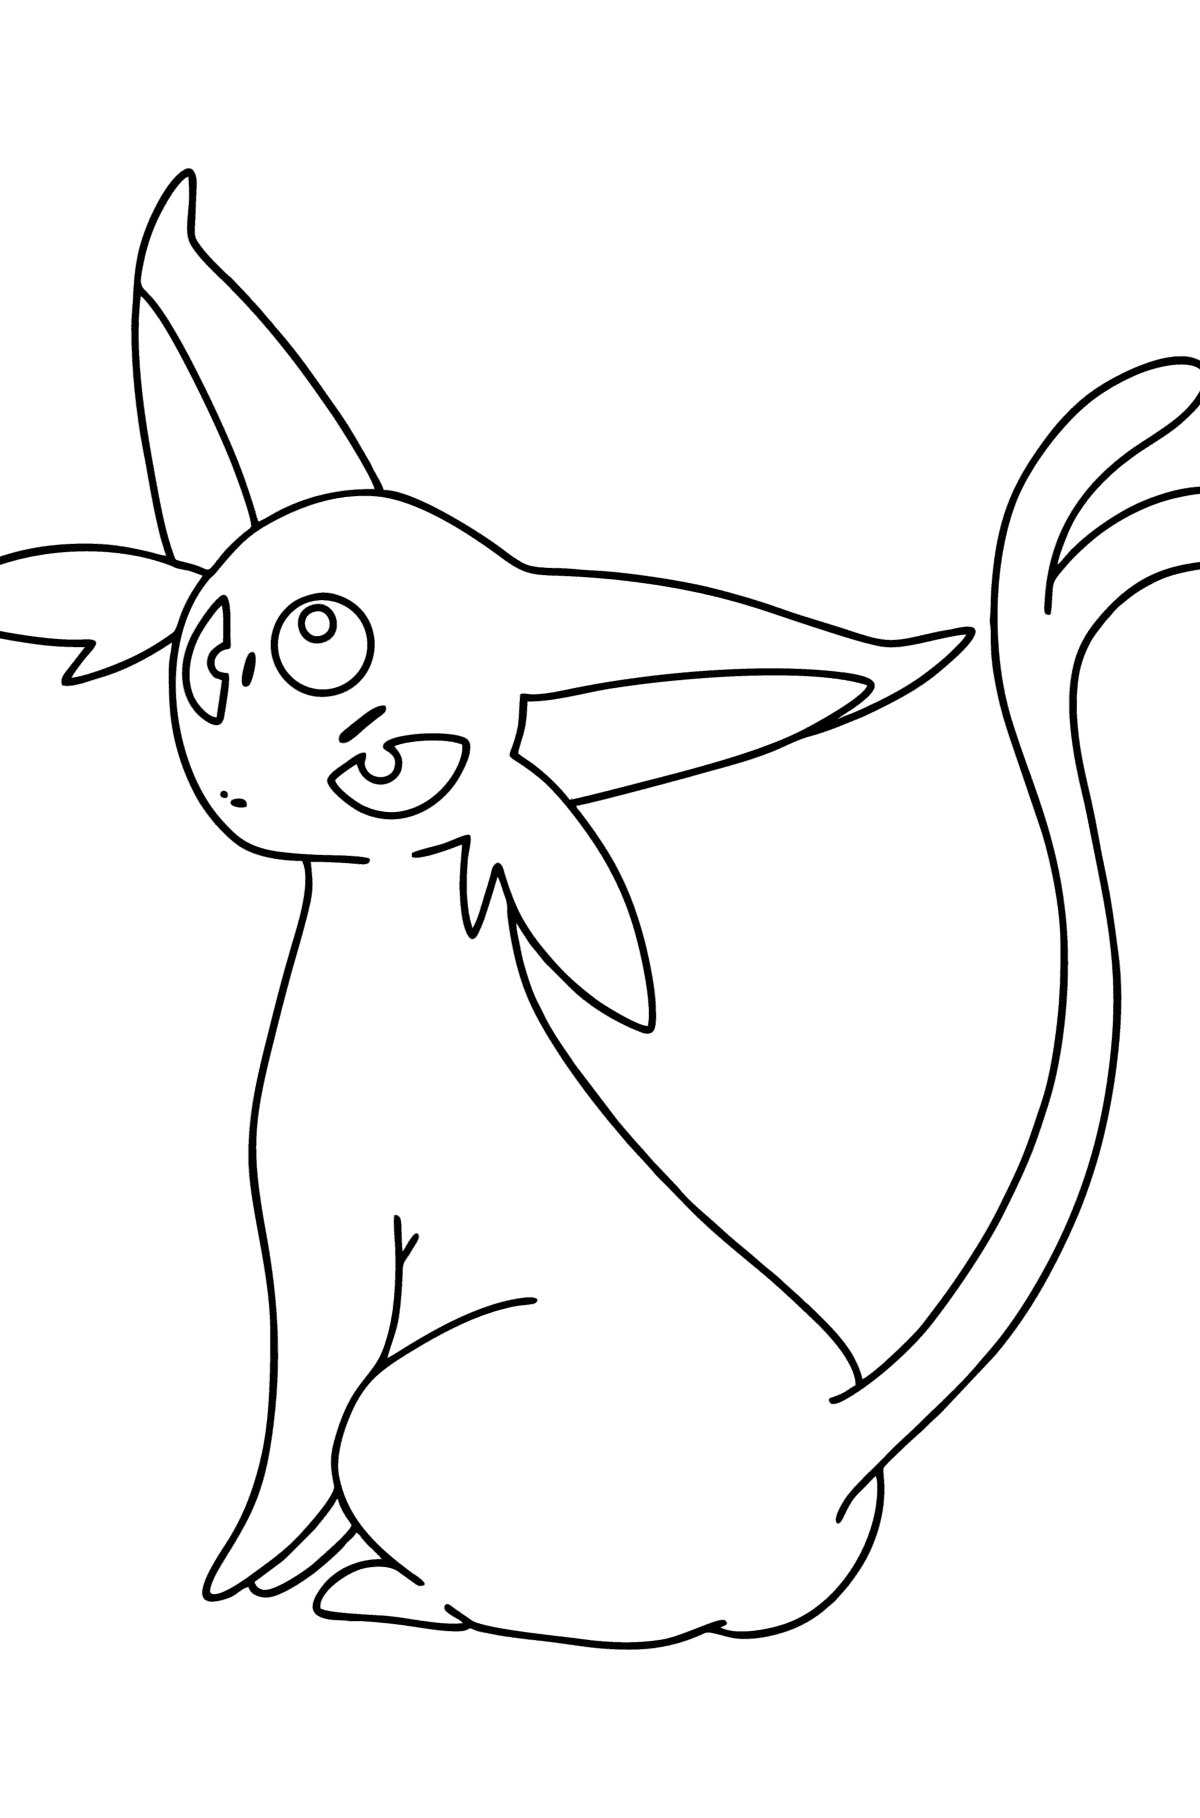 Раскраска Pokemon Go Espeon - Картинки для Детей